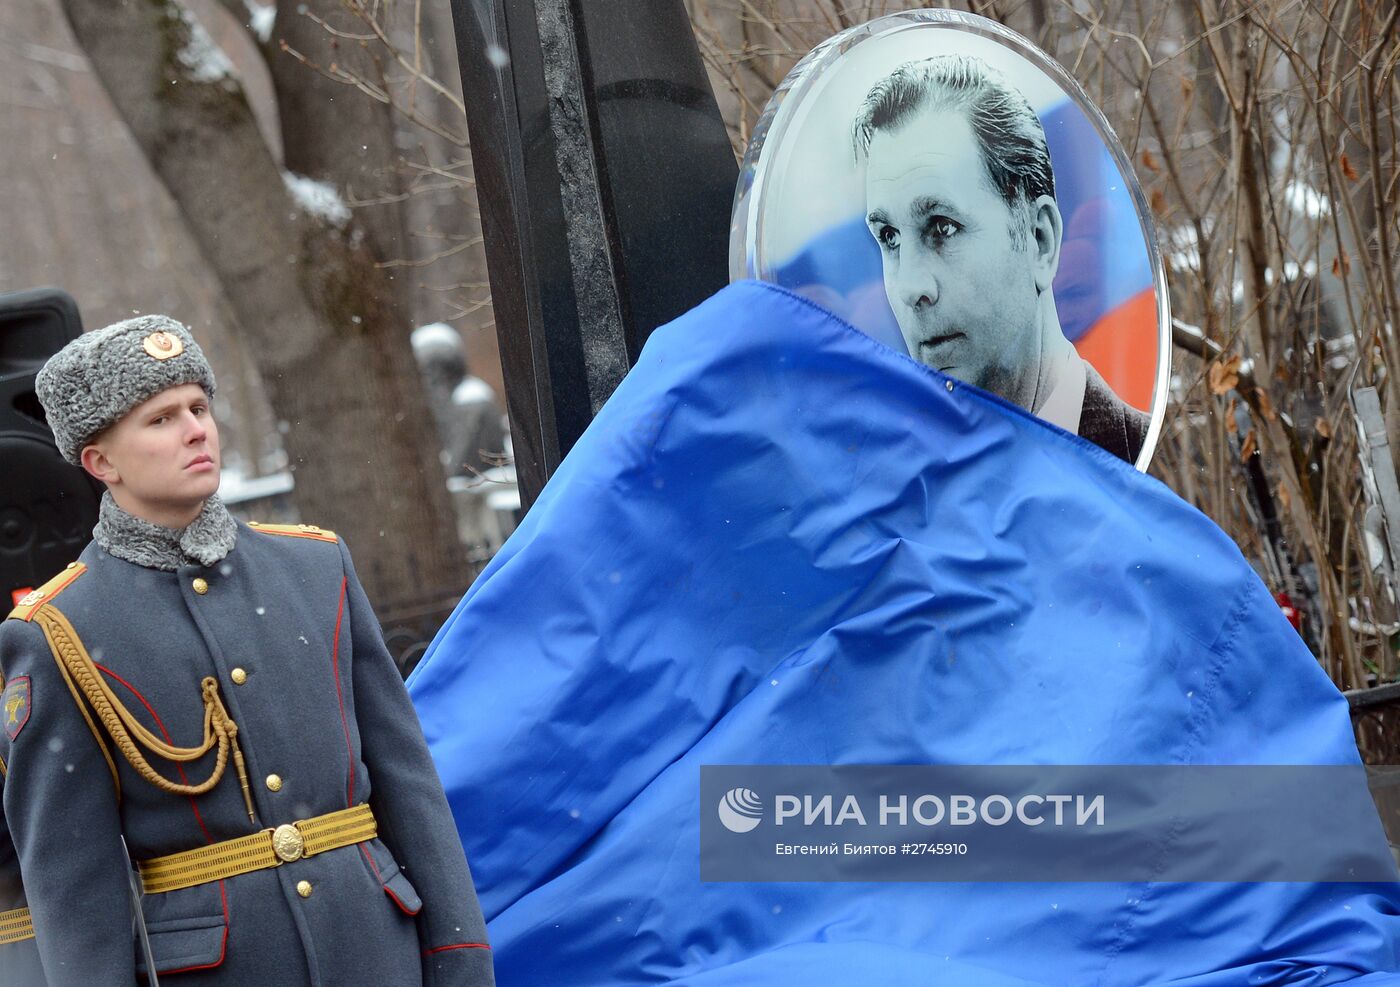 Открытие памятника легендарному хоккейному тренеру Виктору Тихонову